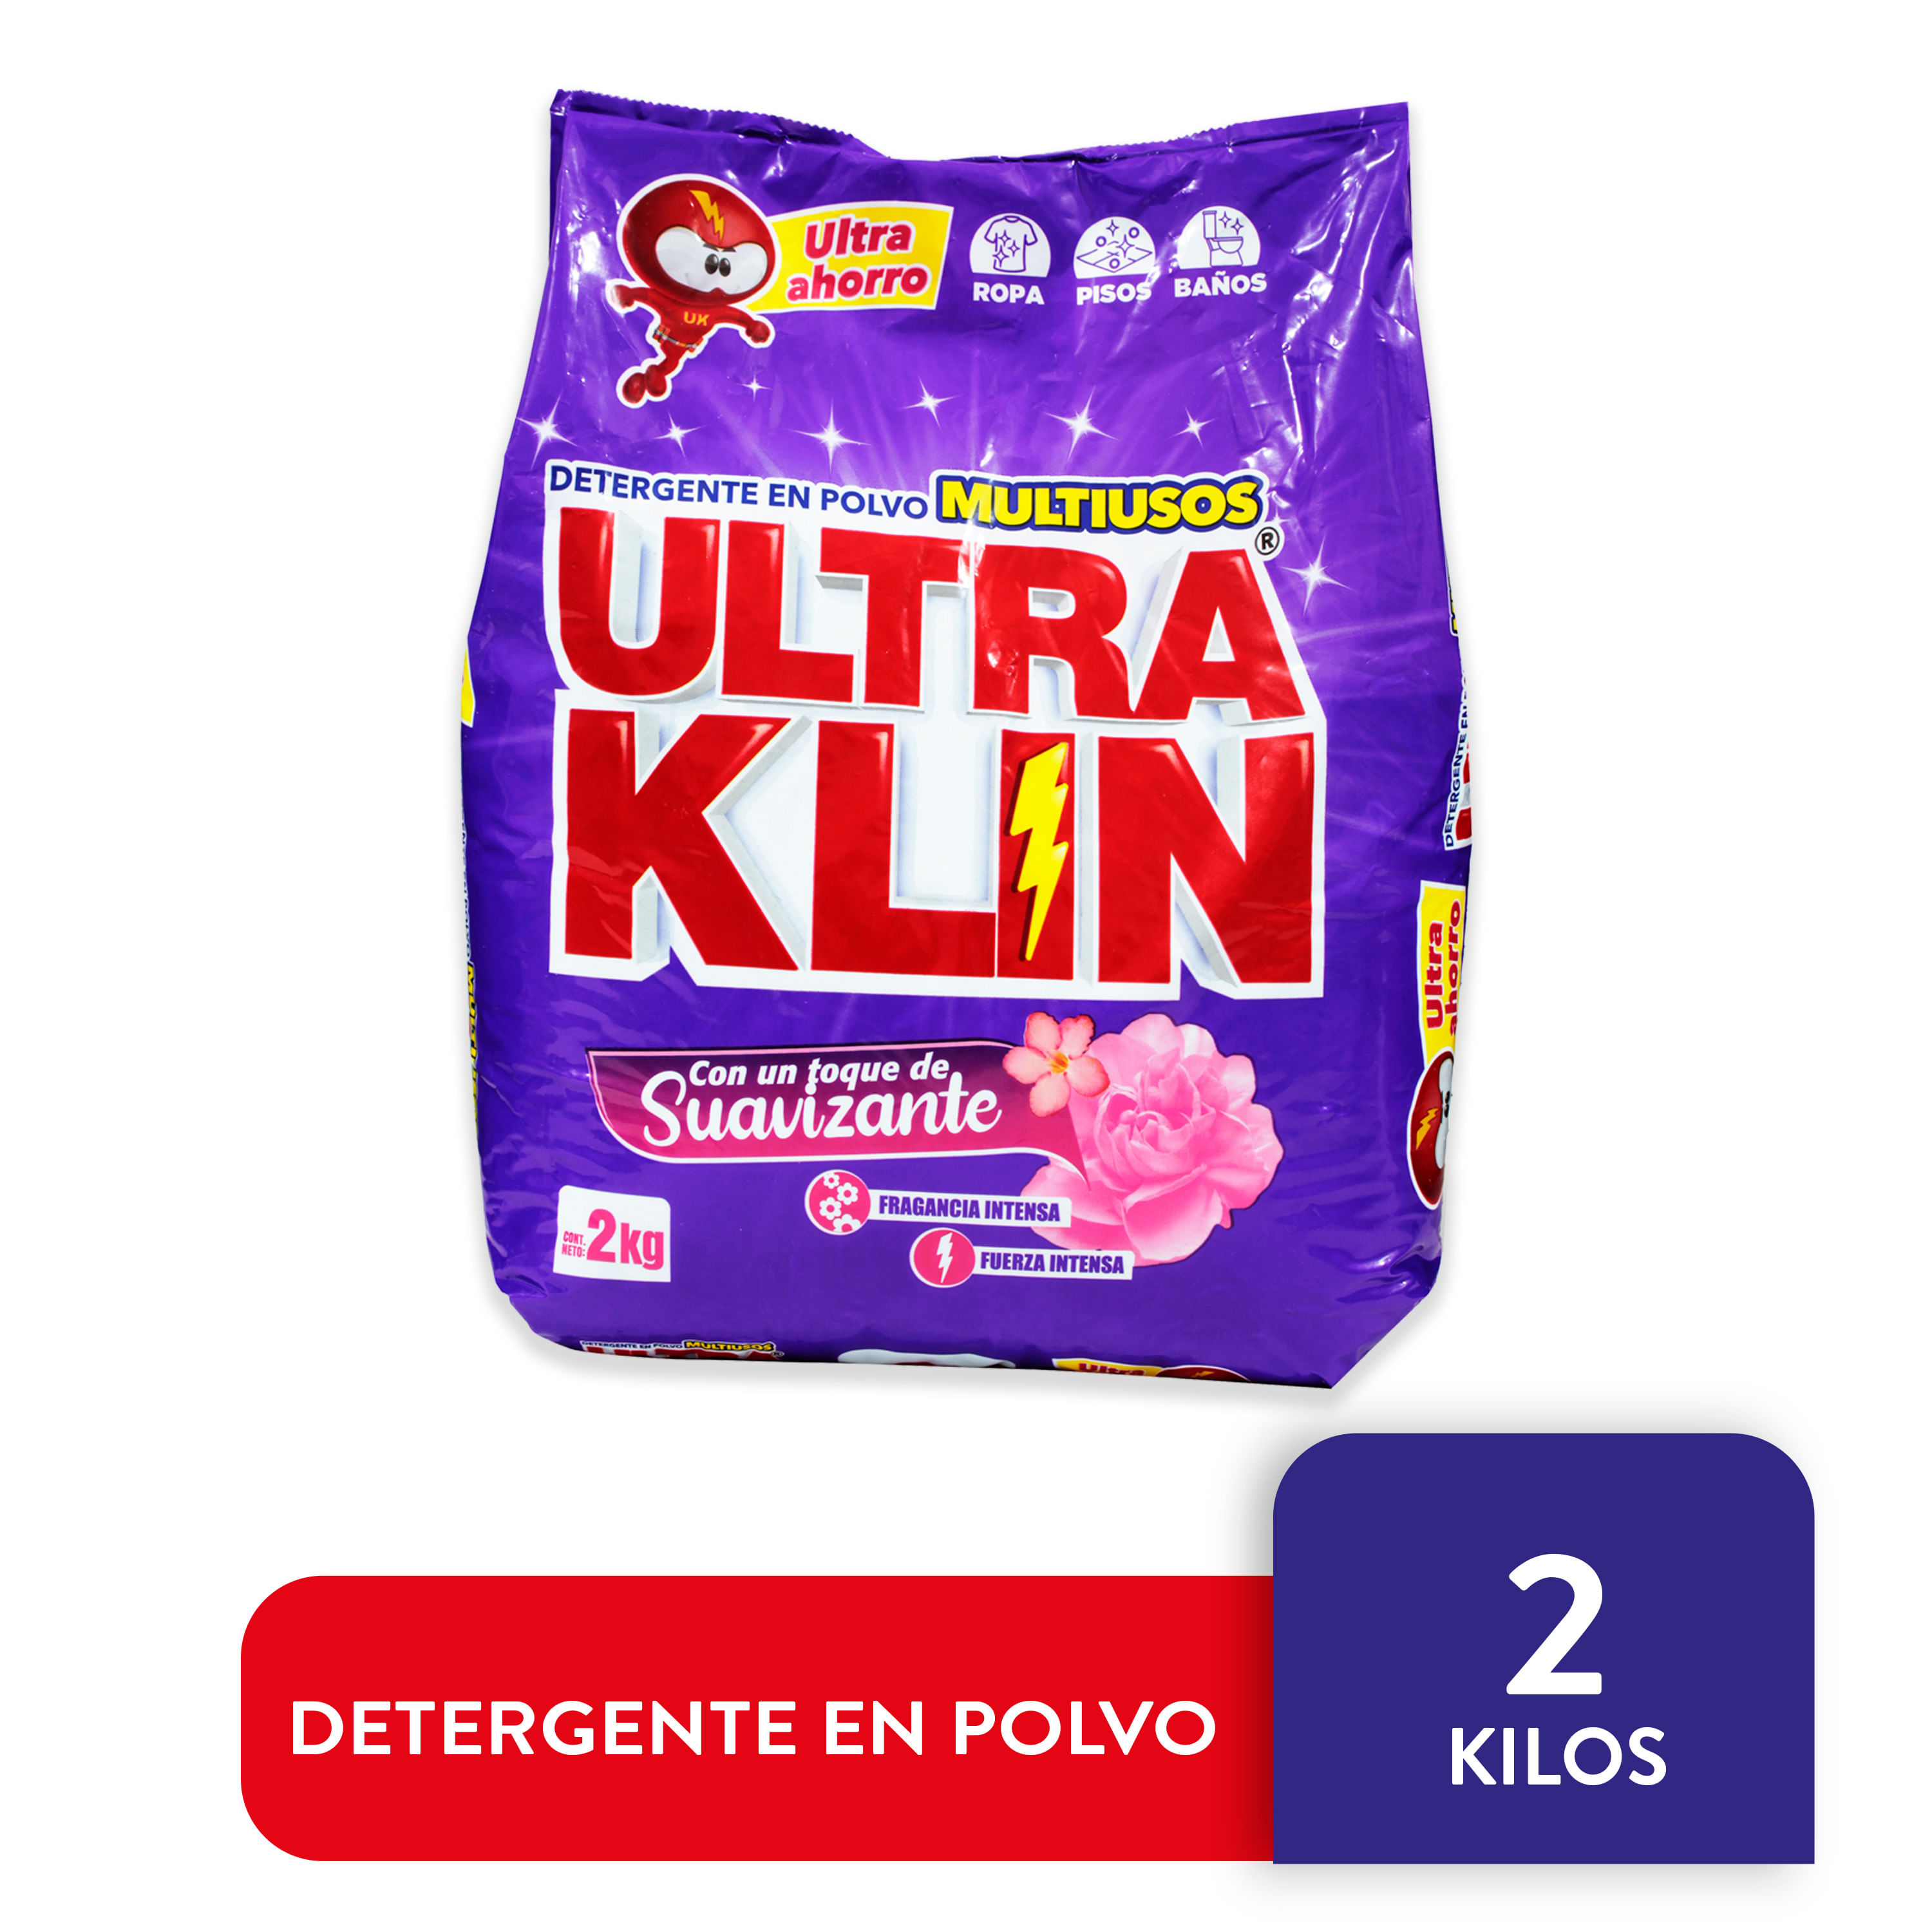 Detergente-Ultraklin-Fuerza-Intensa-2Kg-1-8249